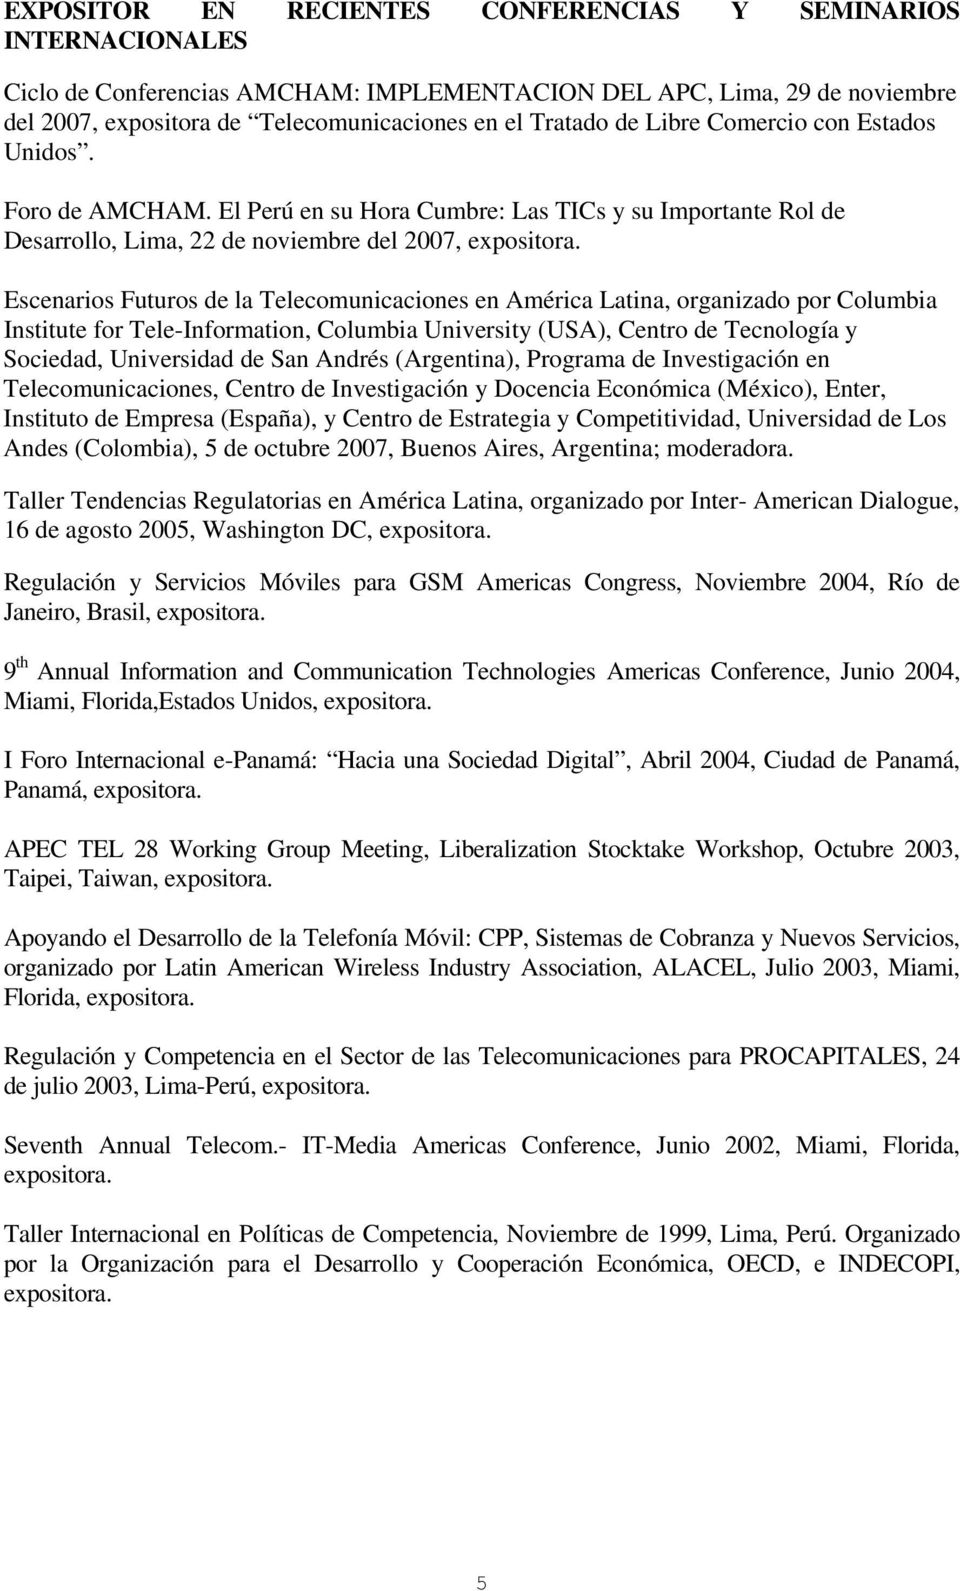 Escenarios Futuros de la Telecomunicaciones en América Latina, organizado por Columbia Institute for Tele-Information, Columbia University (USA), Centro de Tecnología y Sociedad, Universidad de San